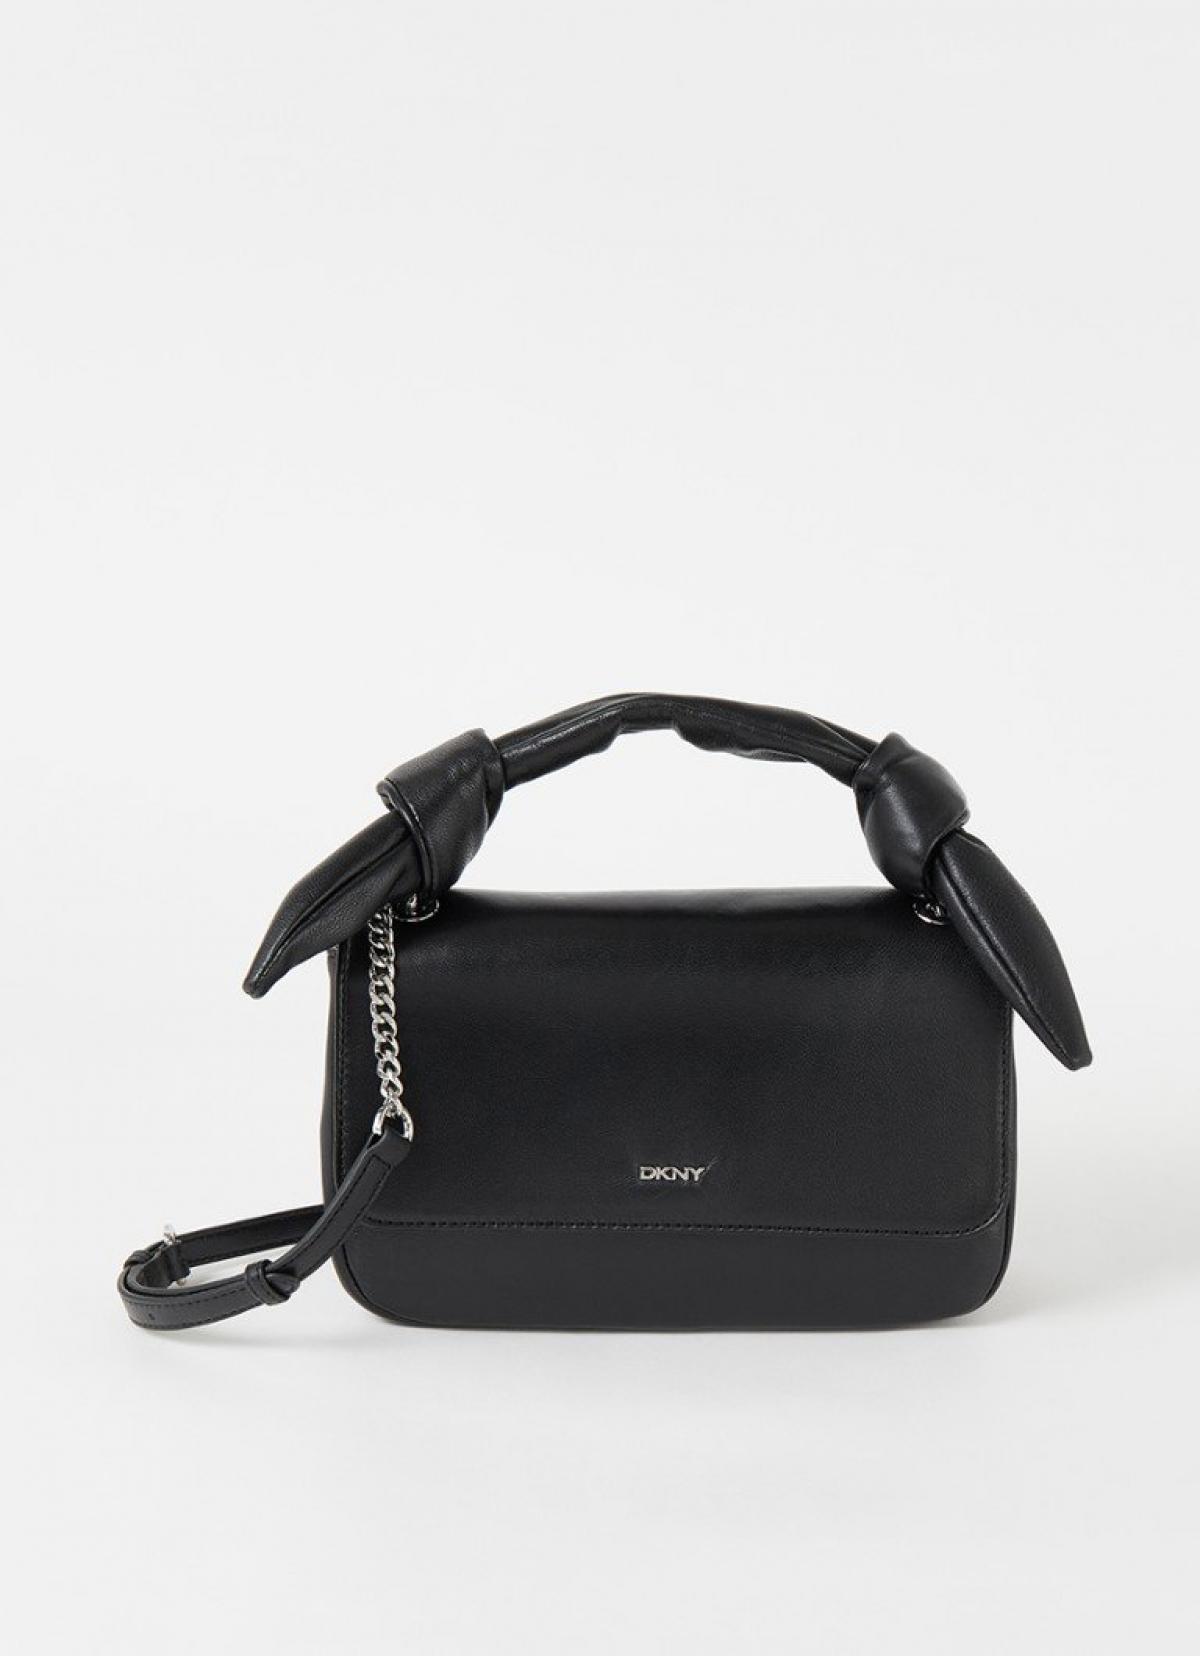 Le petit sac noir DKNY